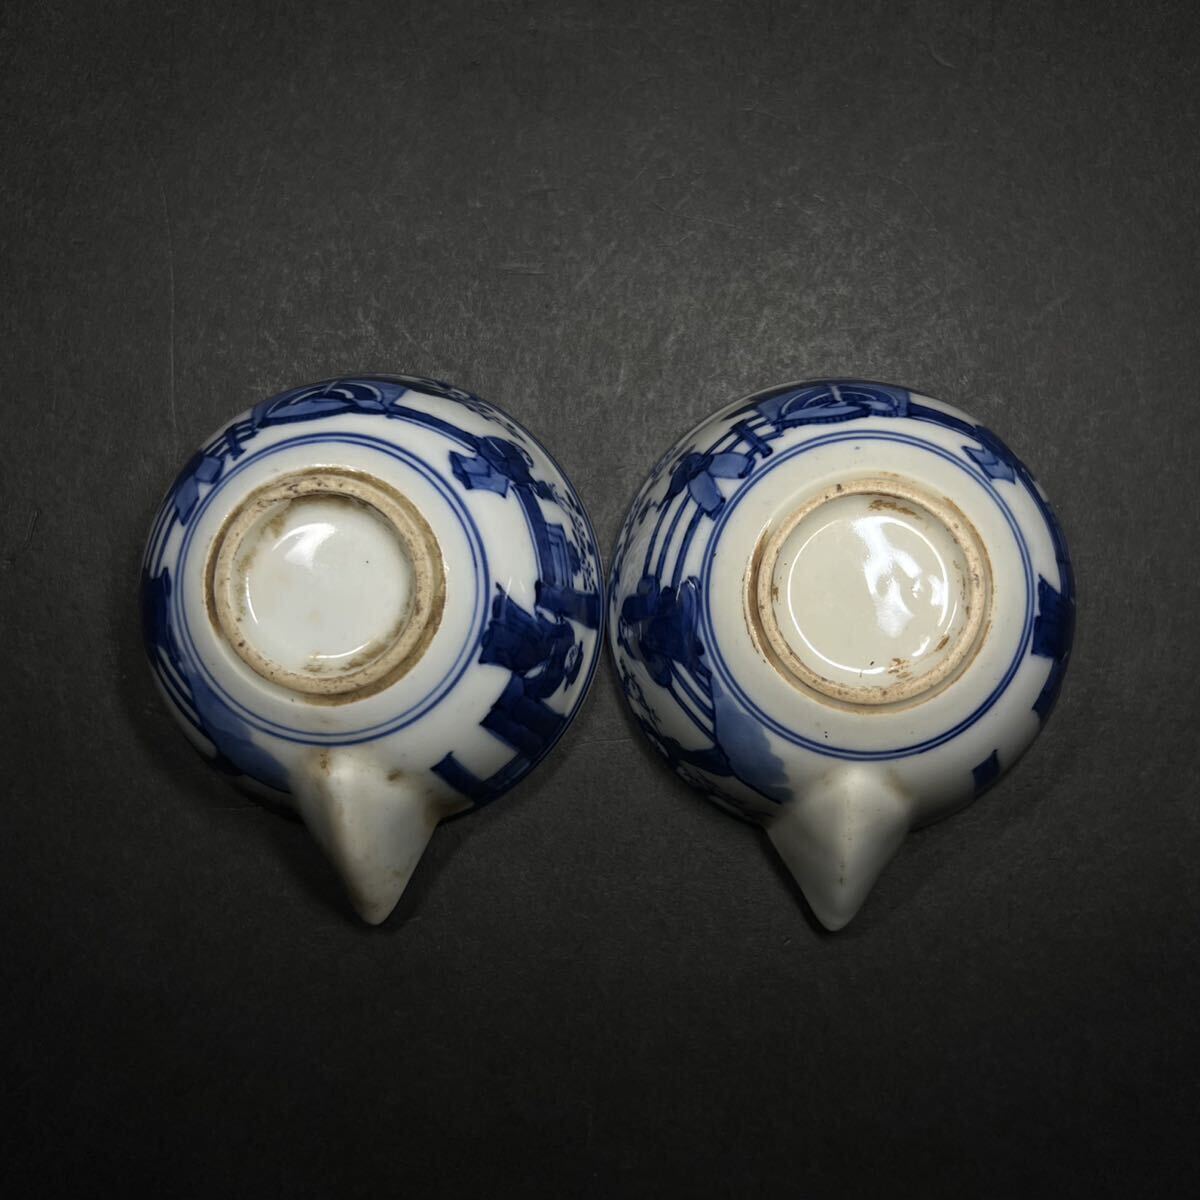 . бутылка один на времена предмет белый фарфор с синим рисунком синий . персона пейзаж . чайная посуда чайная посуда заварной чайник чай примечание Tang предмет China изобразительное искусство 